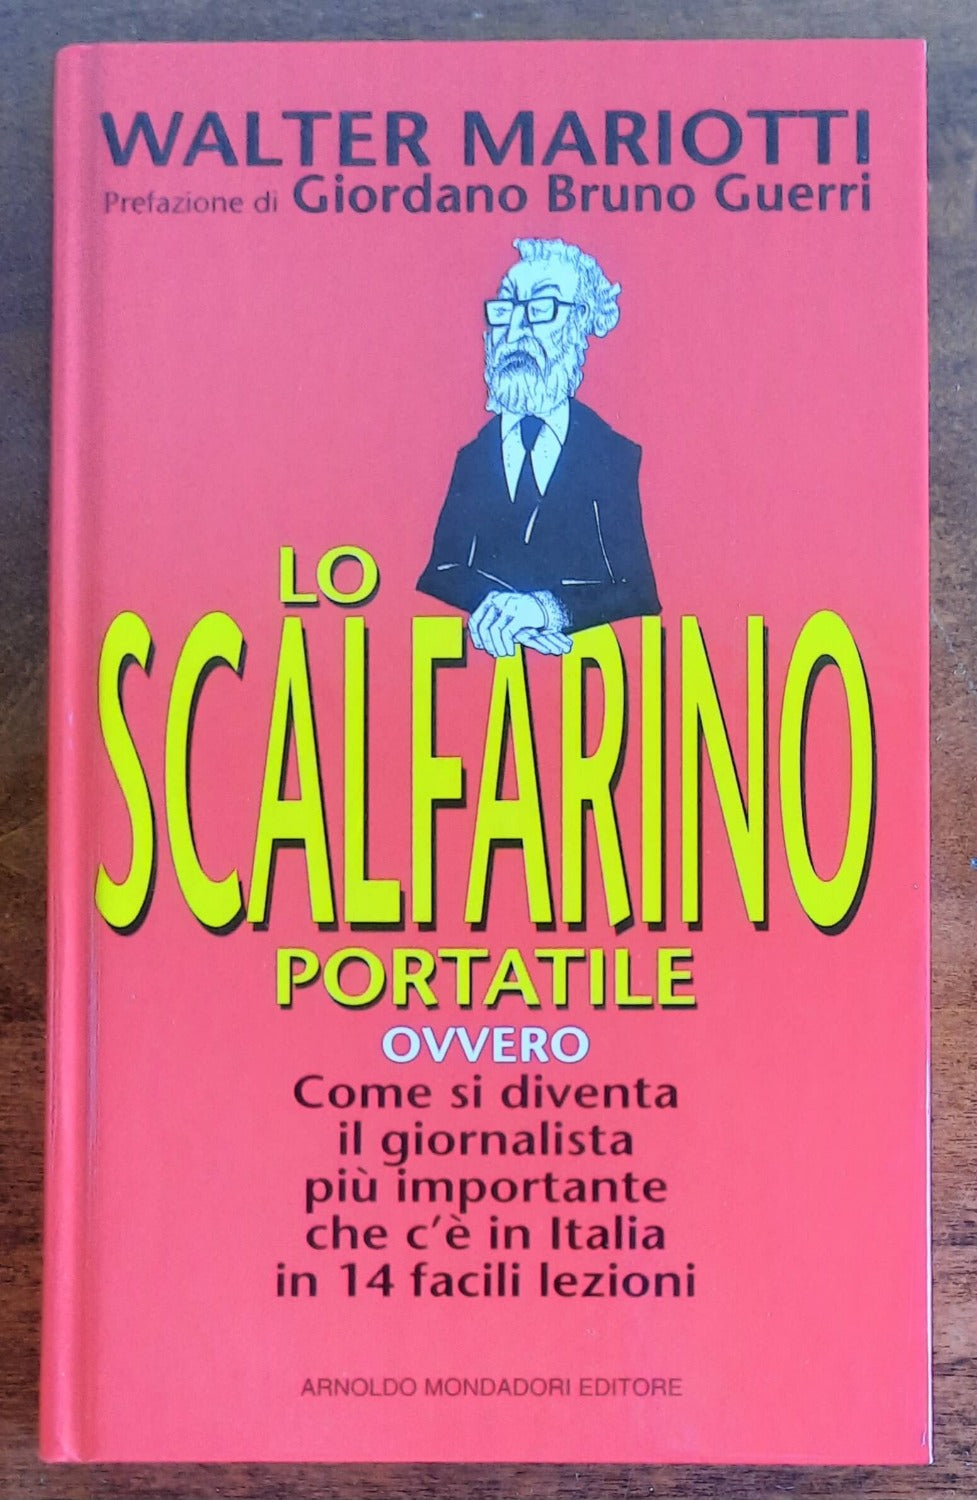 Lo scalfarino portatile ovvero Come si diventa il giornalista più importante che c’è in Italia in 14 facili lezioni